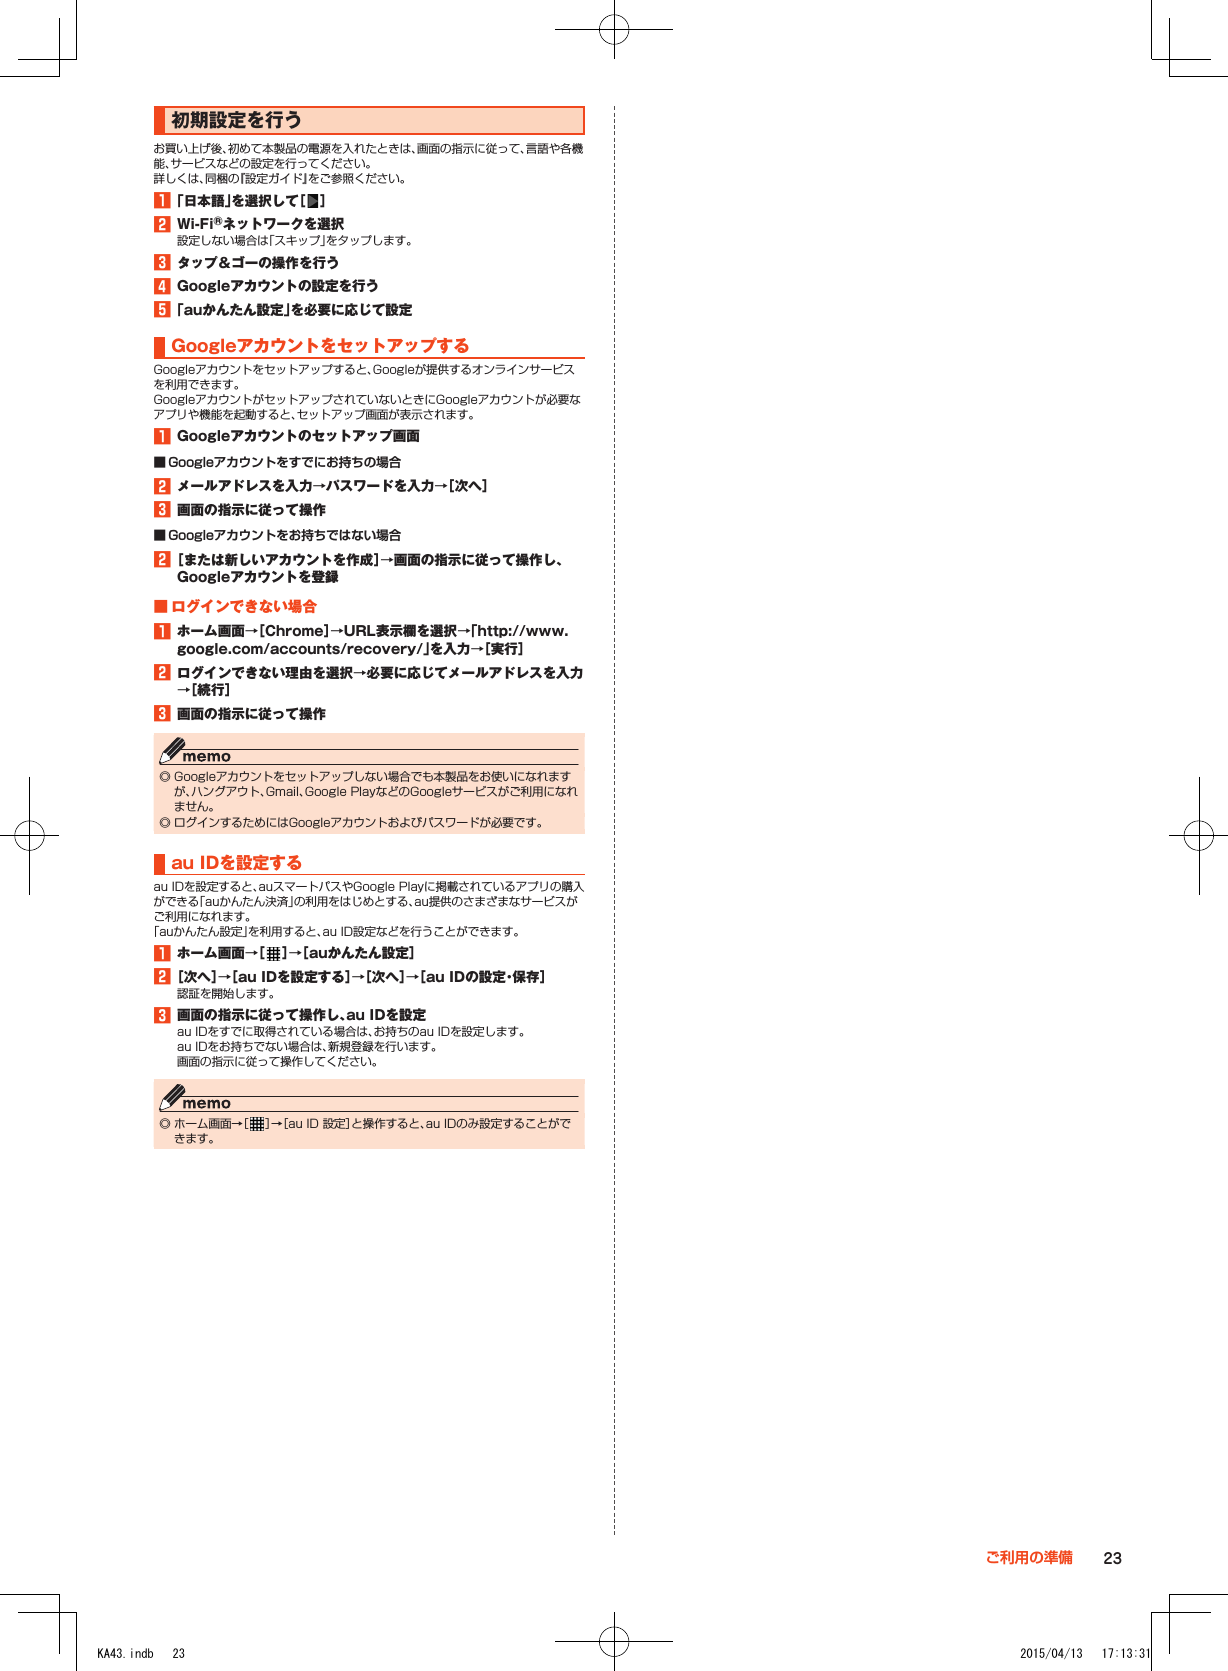 初期設定を行うお買い上げ後、初めて本製品の電源を入れたときは、画面の指示に従って、言語や各機能、サービスなどの設定を行ってください。詳しくは、同梱の『設定ガイド』をご参照ください。1■「日本語」を選択して［ ］2■Wi-Fi®ネットワークを選択設定しない場合は「スキップ」をタップします。3■タップ＆ゴーの操作を行う4■Googleアカウントの設定を行う5■「auかんたん設定」を必要に応じて設定GoogleアカウントをセットアップするGoogleアカウントをセットアップすると、Googleが提供するオンラインサービスを利用できます。GoogleアカウントがセットアップされていないときにGoogleアカウントが必要なアプリや機能を起動すると、セットアップ画面が表示されます。1■Googleアカウントのセットアップ画面 ■ Googleアカウントをすでにお持ちの場合2■メールアドレスを入力→パスワードを入力→［次へ］3■画面の指示に従って操作 ■ Googleアカウントをお持ちではない場合2■［または新しいアカウントを作成］→画面の指示に従って操作し、Googleアカウントを登録■■ログインできない場合1■ホーム画面→［Chrome］→URL表示欄を選択→「（http://www.google.com/accounts/recovery/）」を入力→［実行］2■ログインできない理由を選択→必要に応じてメールアドレスを入力→［続行］3■画面の指示に従って操作 ◎ Googleアカウントをセットアップしない場合でも本製品をお使いになれますが、ハングアウト、Gmail、Google PlayなどのGoogleサービスがご利用になれません。 ◎ ログインするためにはGoogleアカウントおよびパスワードが必要です。au■IDを設定するau IDを設定すると、auスマートパスやGoogle Playに掲載されているアプリの購入ができる「auかんたん決済」の利用をはじめとする、au提供のさまざまなサービスがご利用になれます。「auかんたん設定」を利用すると、au ID設定などを行うことができます。1■ホーム画面→［ ］→［auかんたん設定］2■［次へ］→［au■IDを設定する］→［次へ］→［au■IDの設定・保存］認証を開始します。3■画面の指示に従って操作し、au■IDを設定au IDをすでに取得されている場合は、お持ちのau IDを設定します。au IDをお持ちでない場合は、新規登録を行います。画面の指示に従って操作してください。 ◎ ホーム画面→［ ］→［au ID 設定］と操作すると、au IDのみ設定することができます。23ご利用の準備KA43.indb   23 2015/04/13   17:13:31